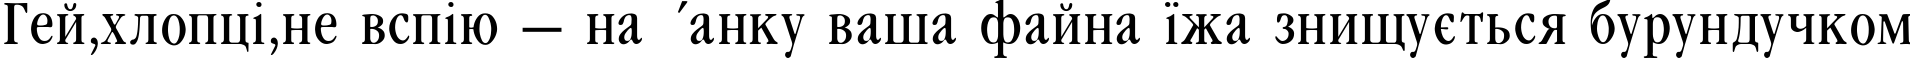 Пример написания шрифтом Garamondcond-Light текста на украинском